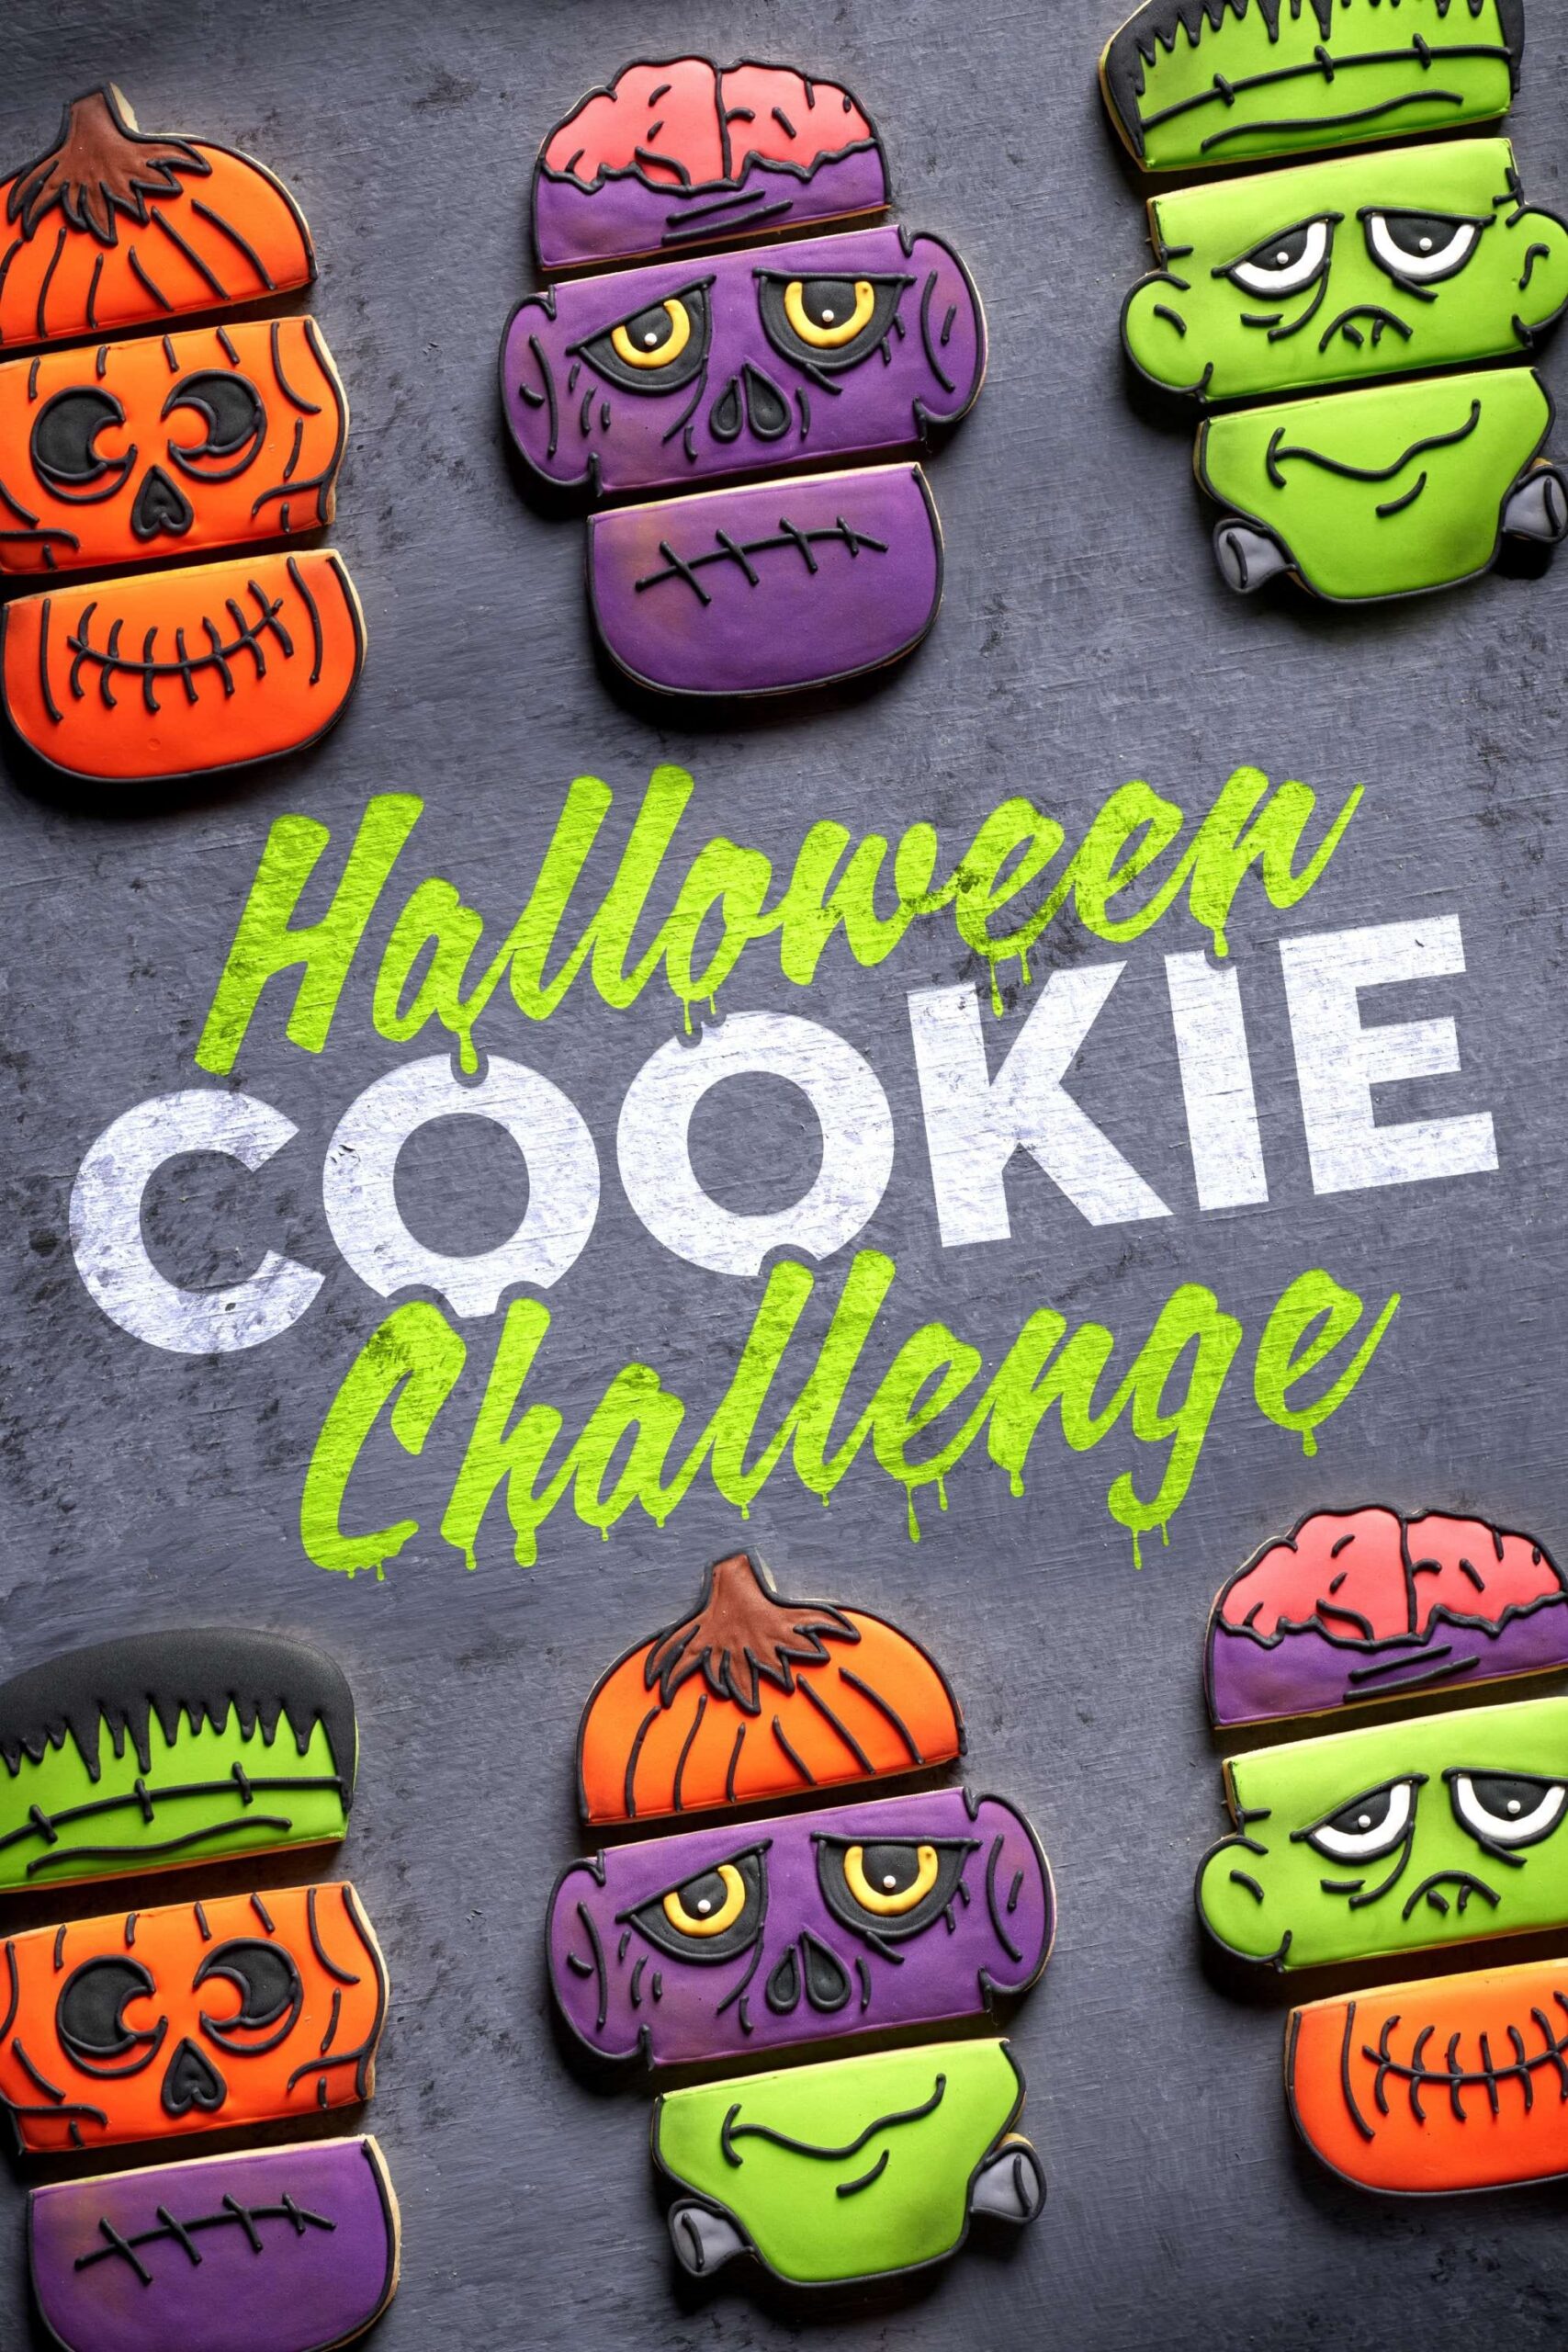 Halloween Cookie Challenge poster